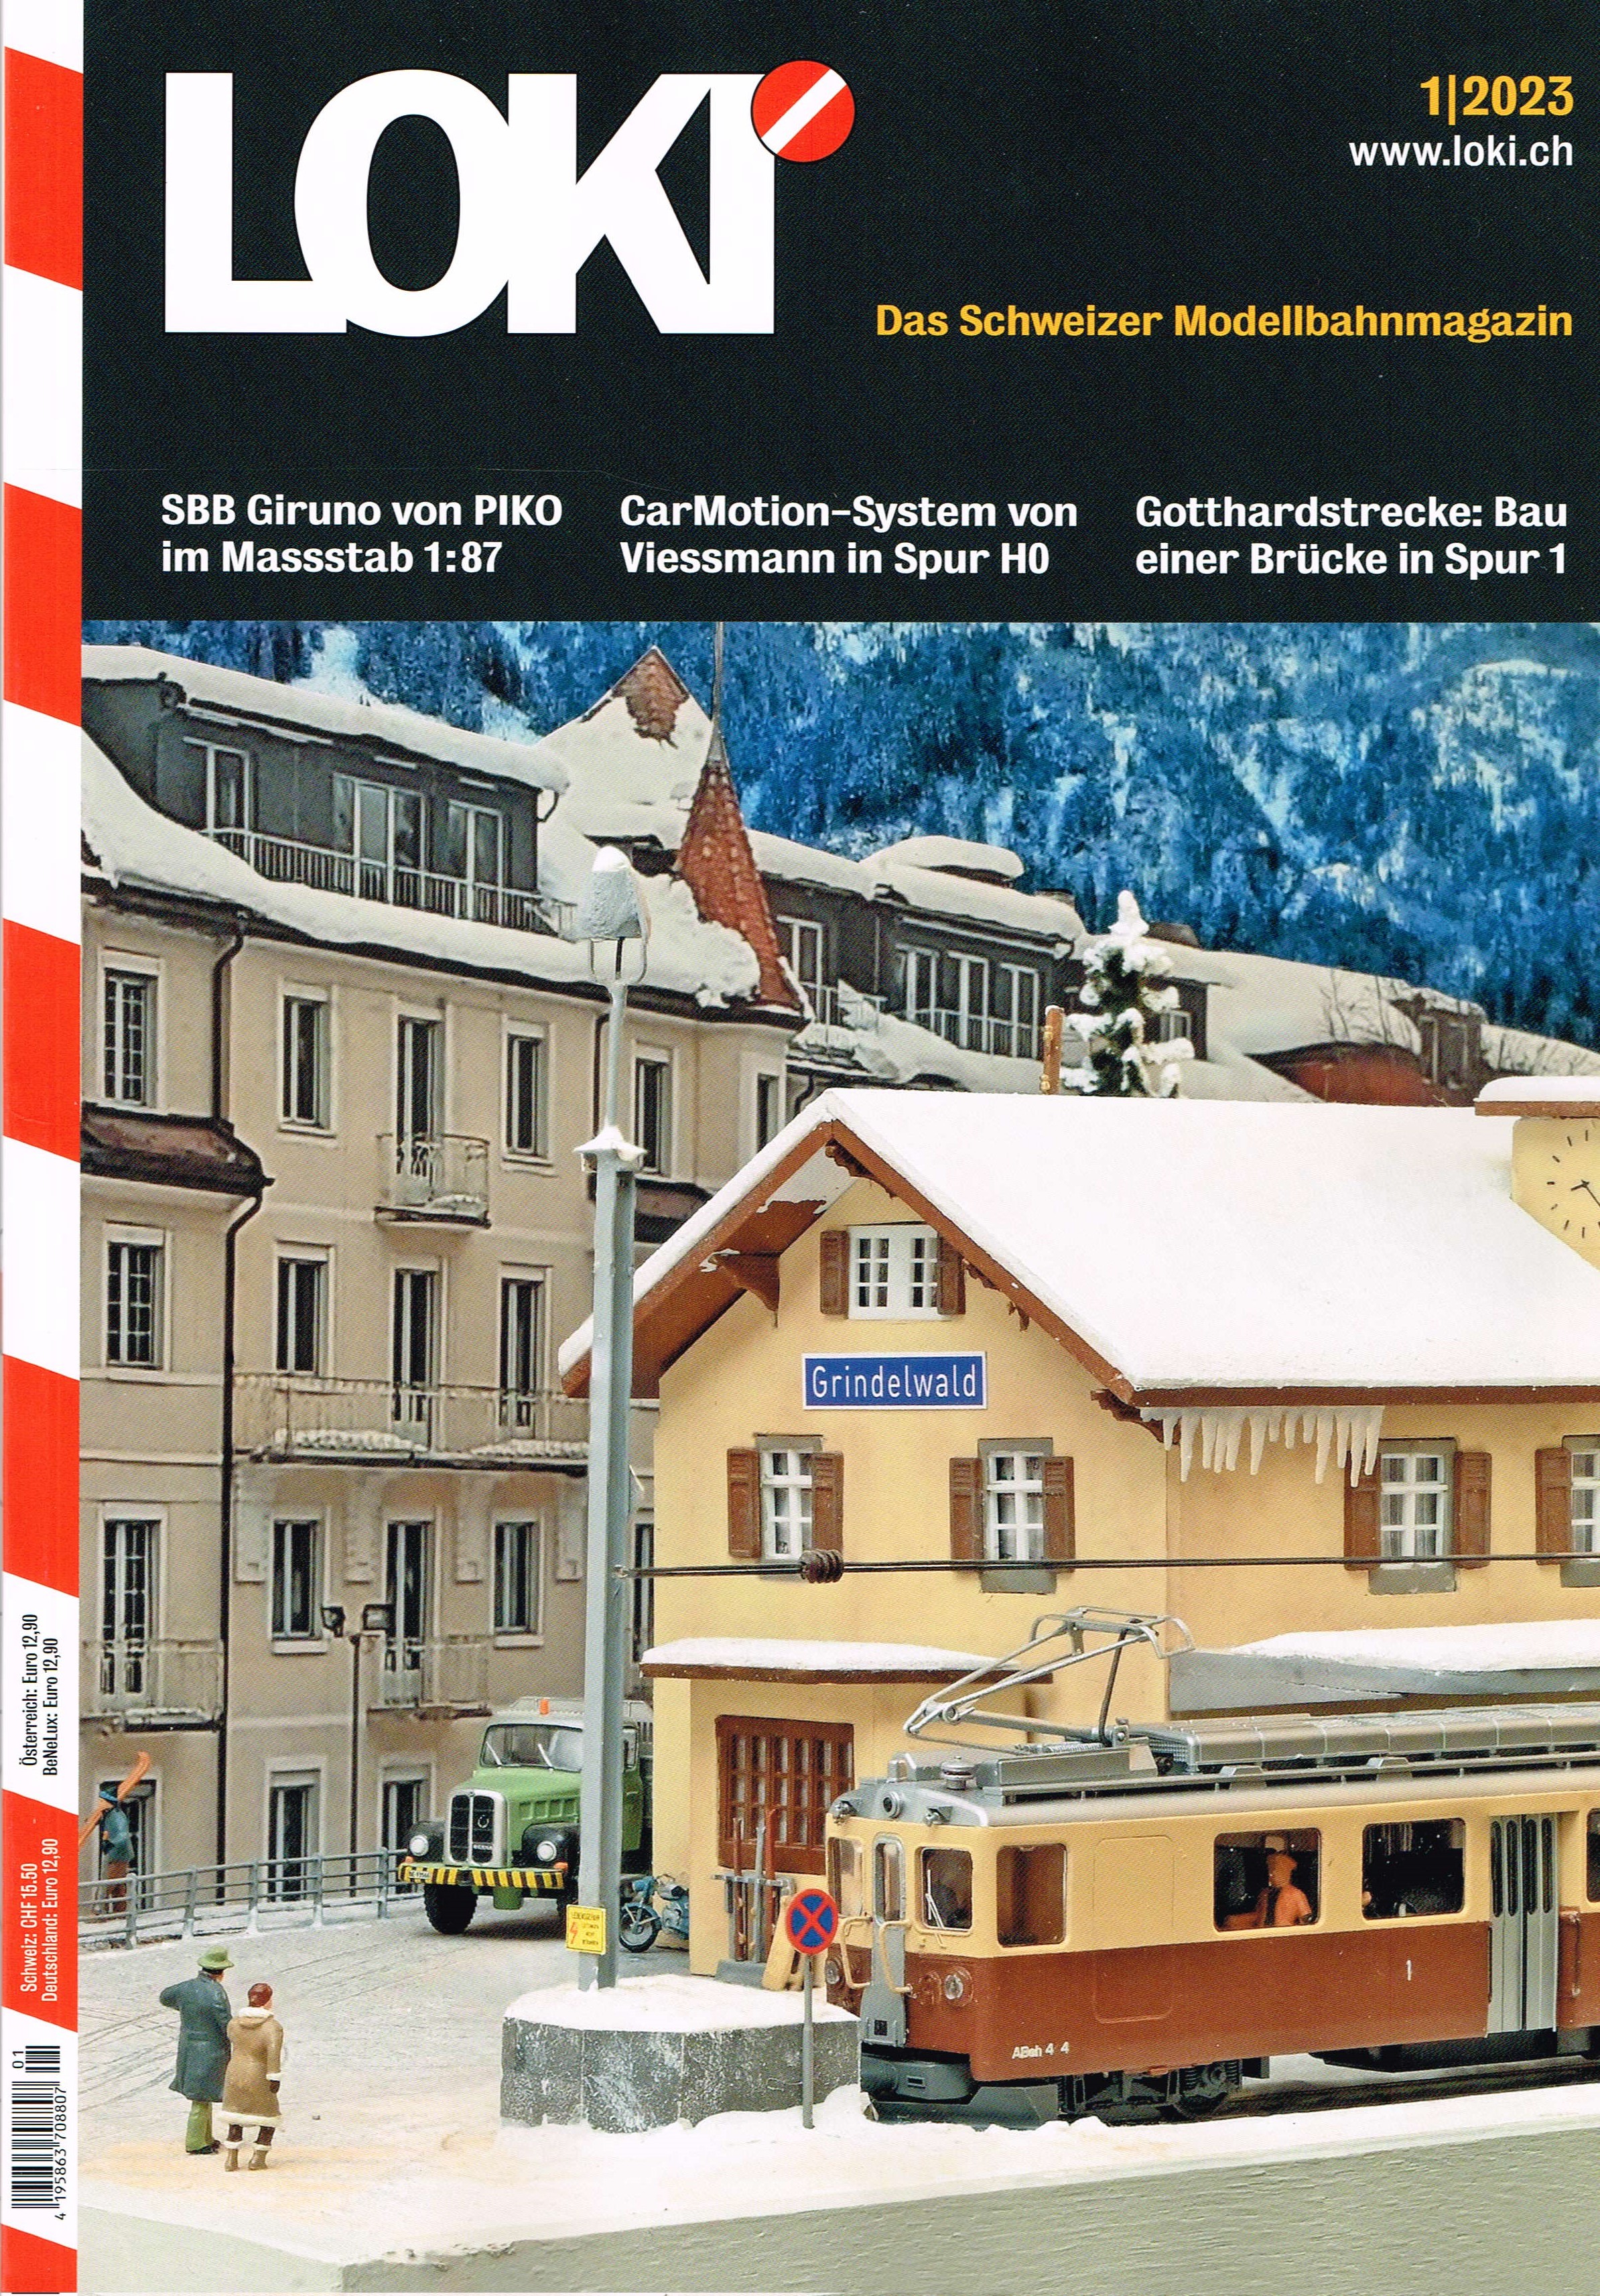 LOKI Das Schweizer Modellbahnmagazin 1/2023 wurde bereits im Dezember ausgeliefert. 